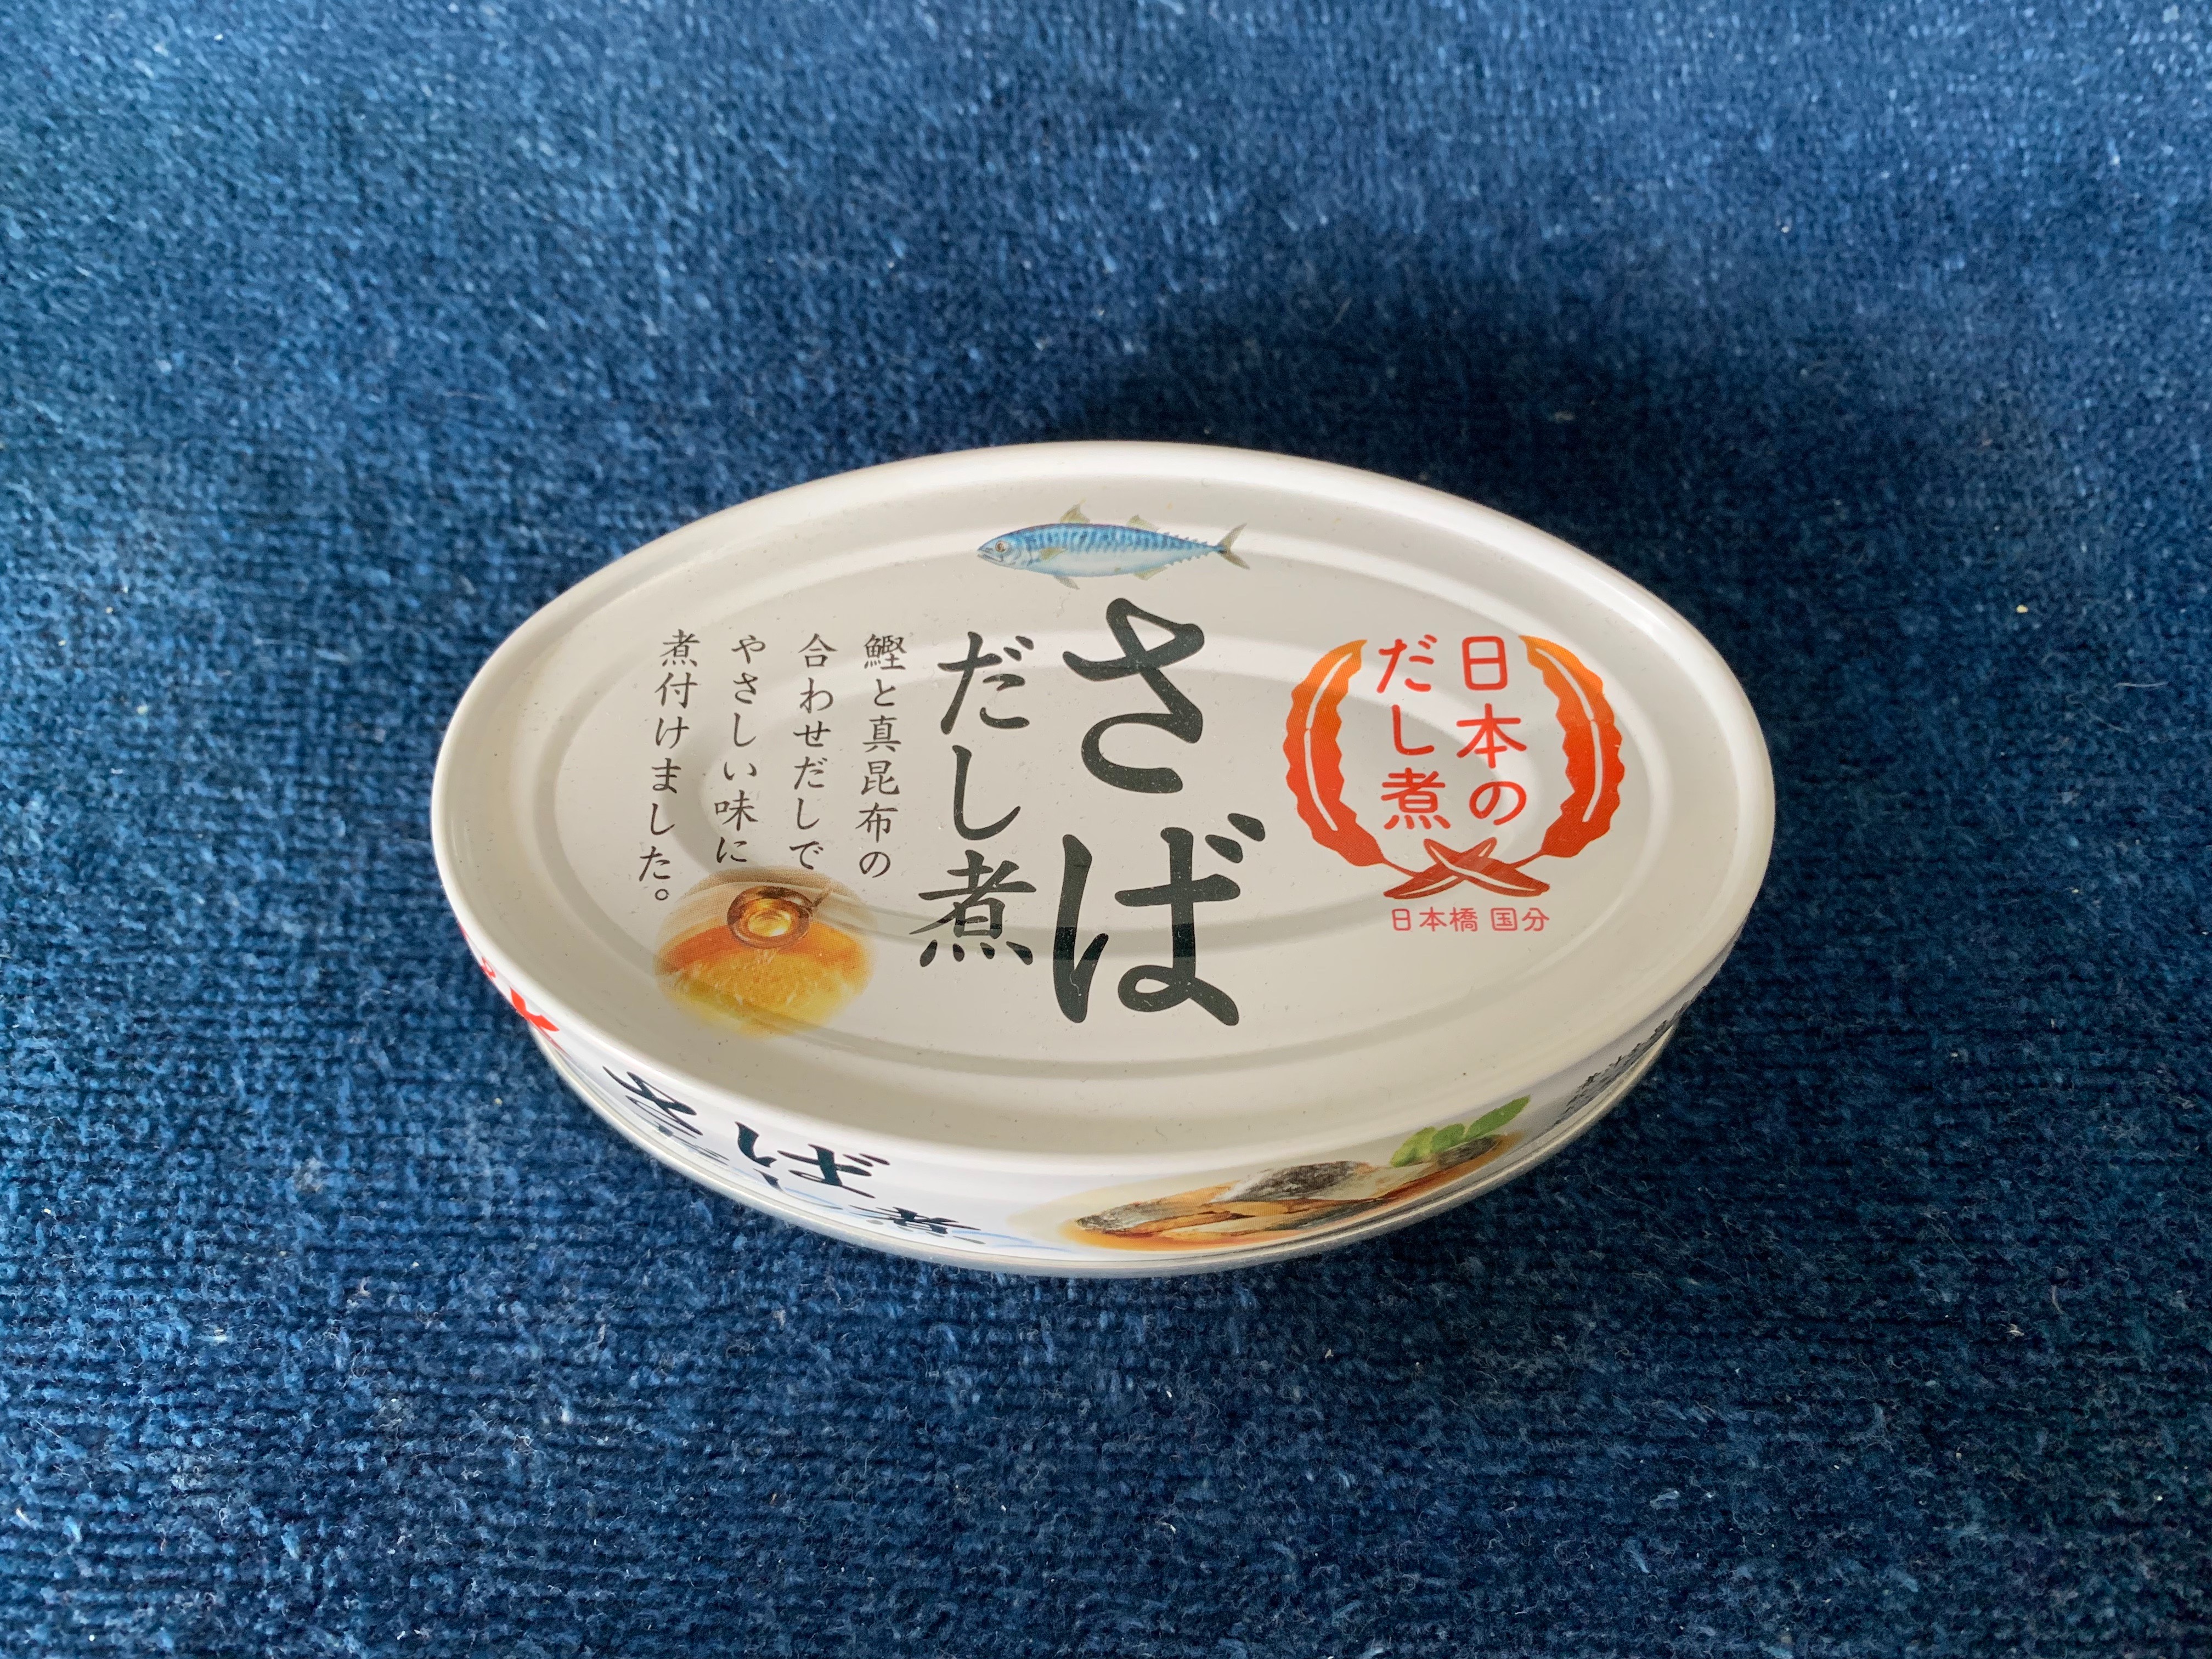 国分グループの控えめで絶妙なだし煮鯖缶「日本のさばだし煮」を食レポしてみた。【5つ星評価、味】 | ヘルシック